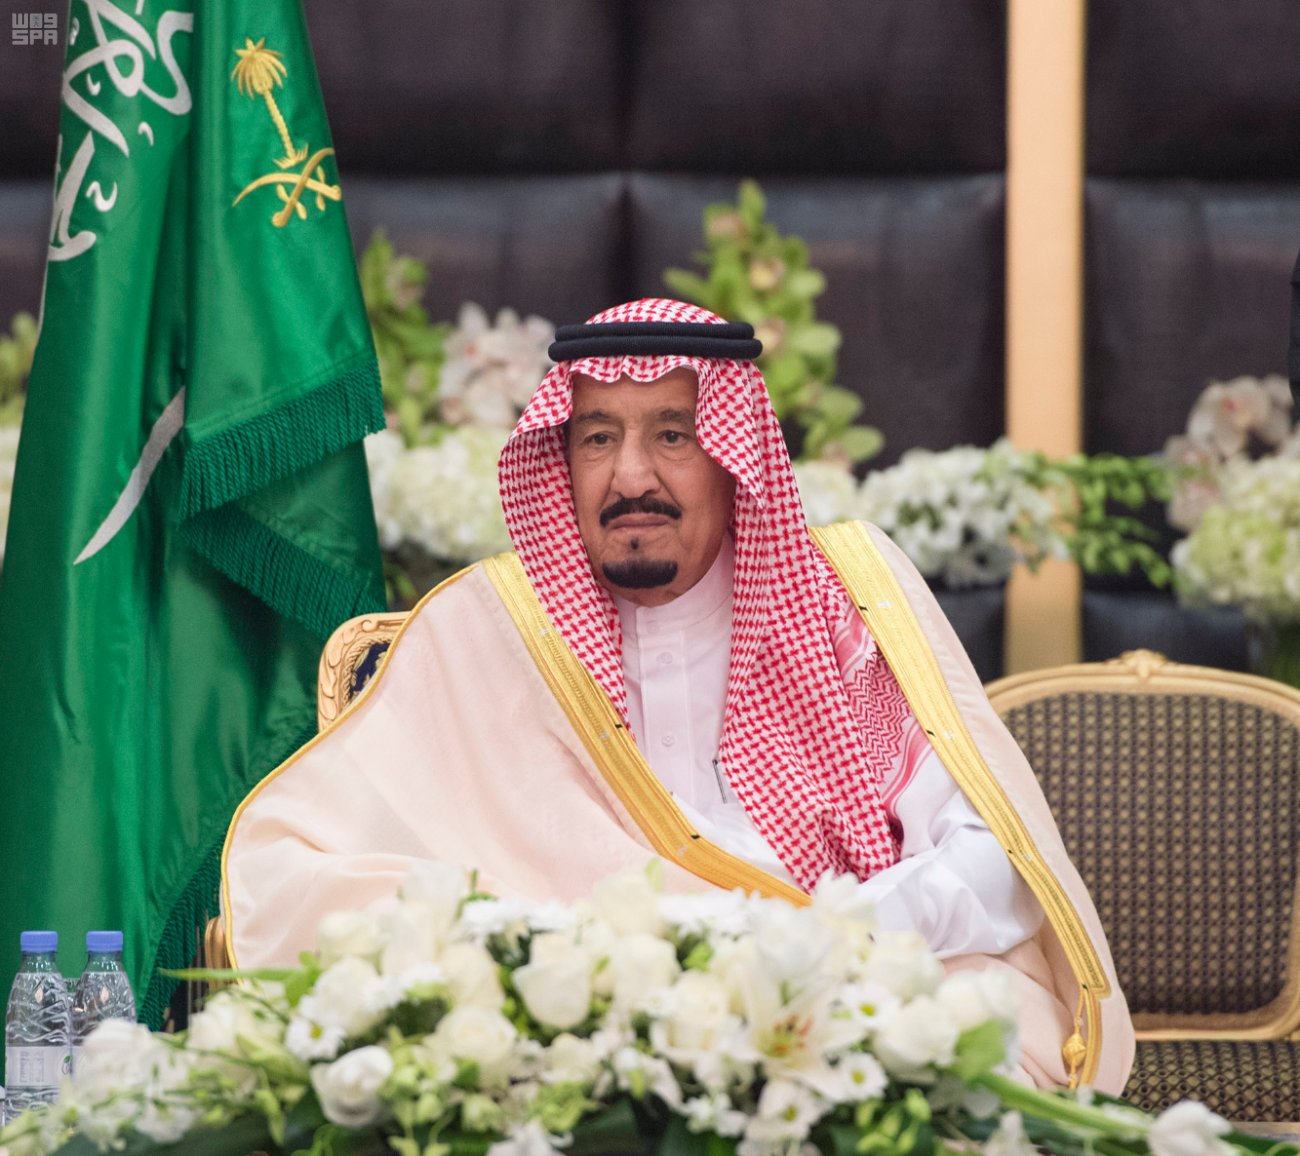 ملك البحرين يهنئ خادم الحرمين بالذكرى الثانية لتوليه مقاليد الحكم